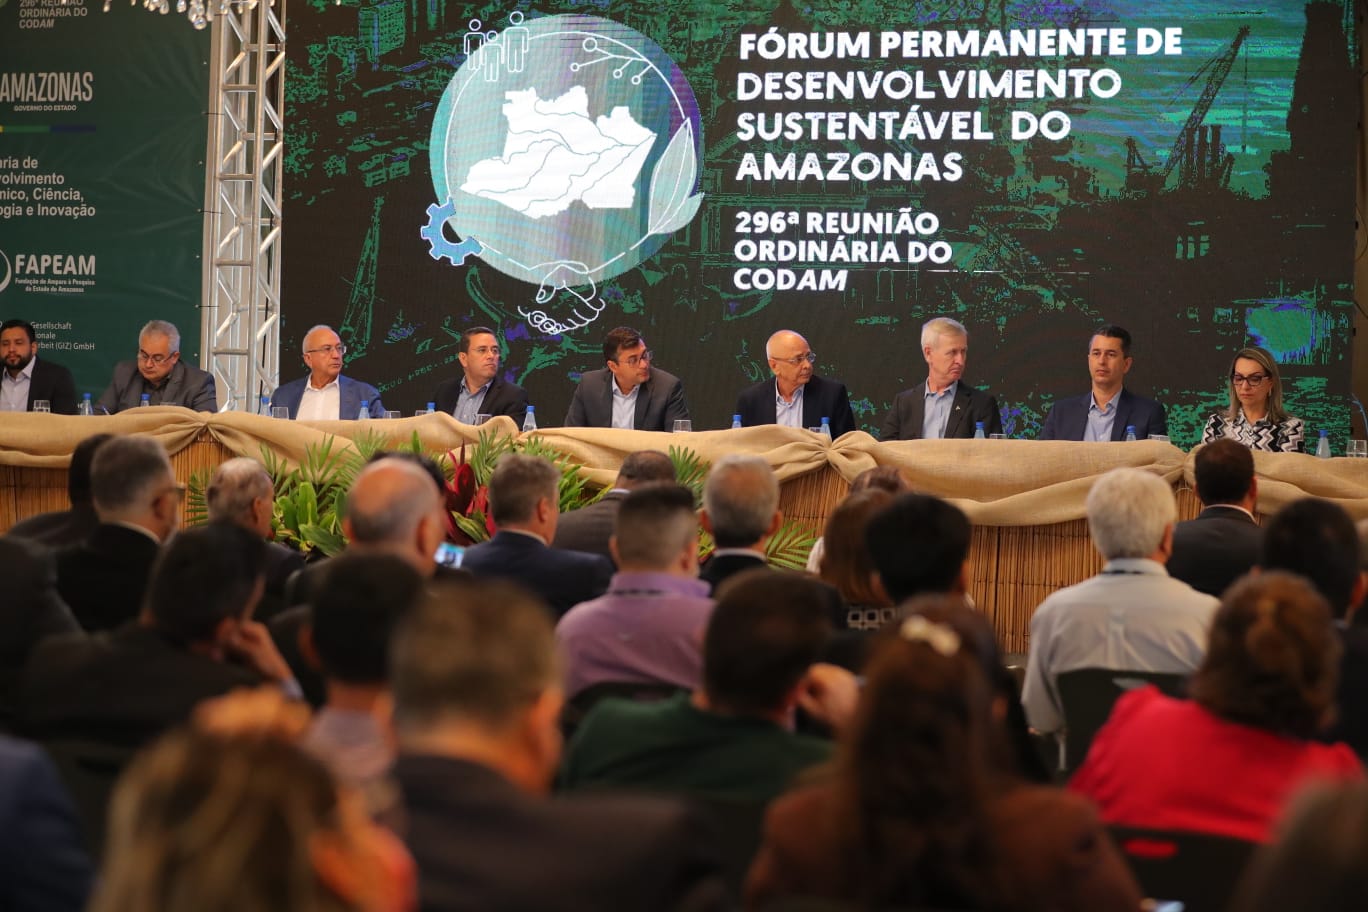 Codam aprova R$ 1,5 bilhão em novos investimentos industriais no Amazonas